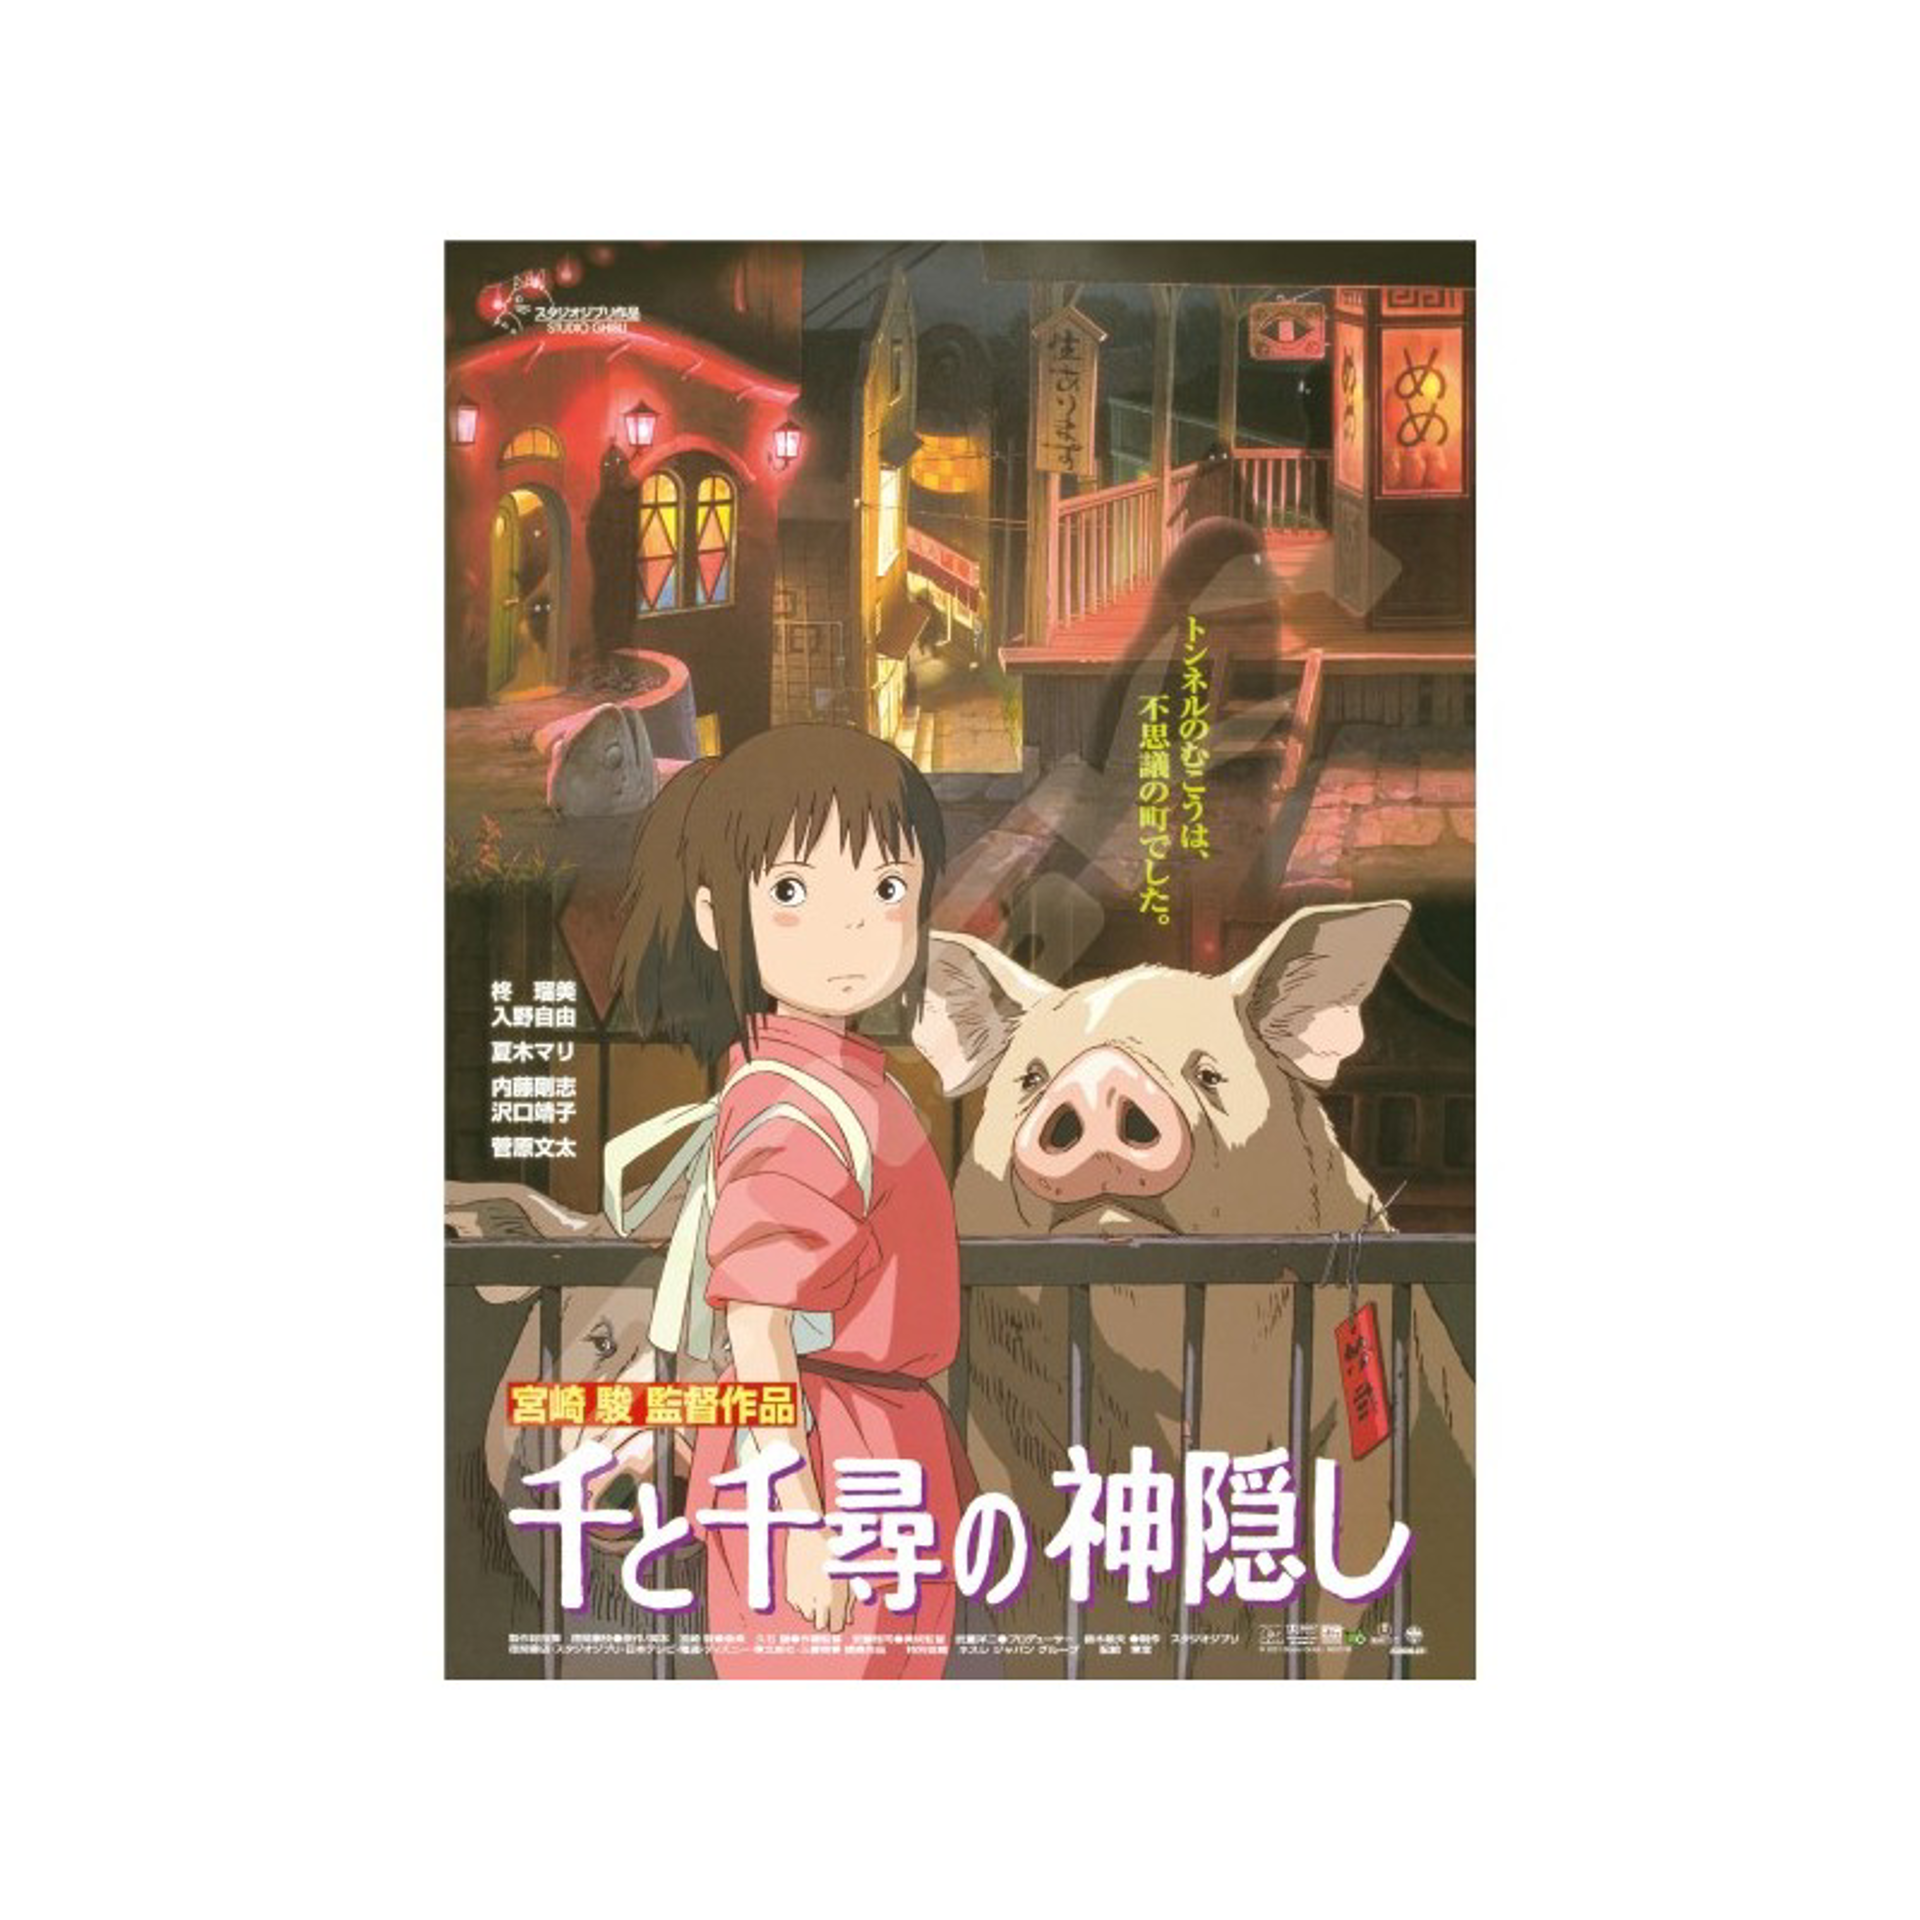 Ghibli - Le voyage de Chihiro - Puzzle Affiche de film 1000pcs